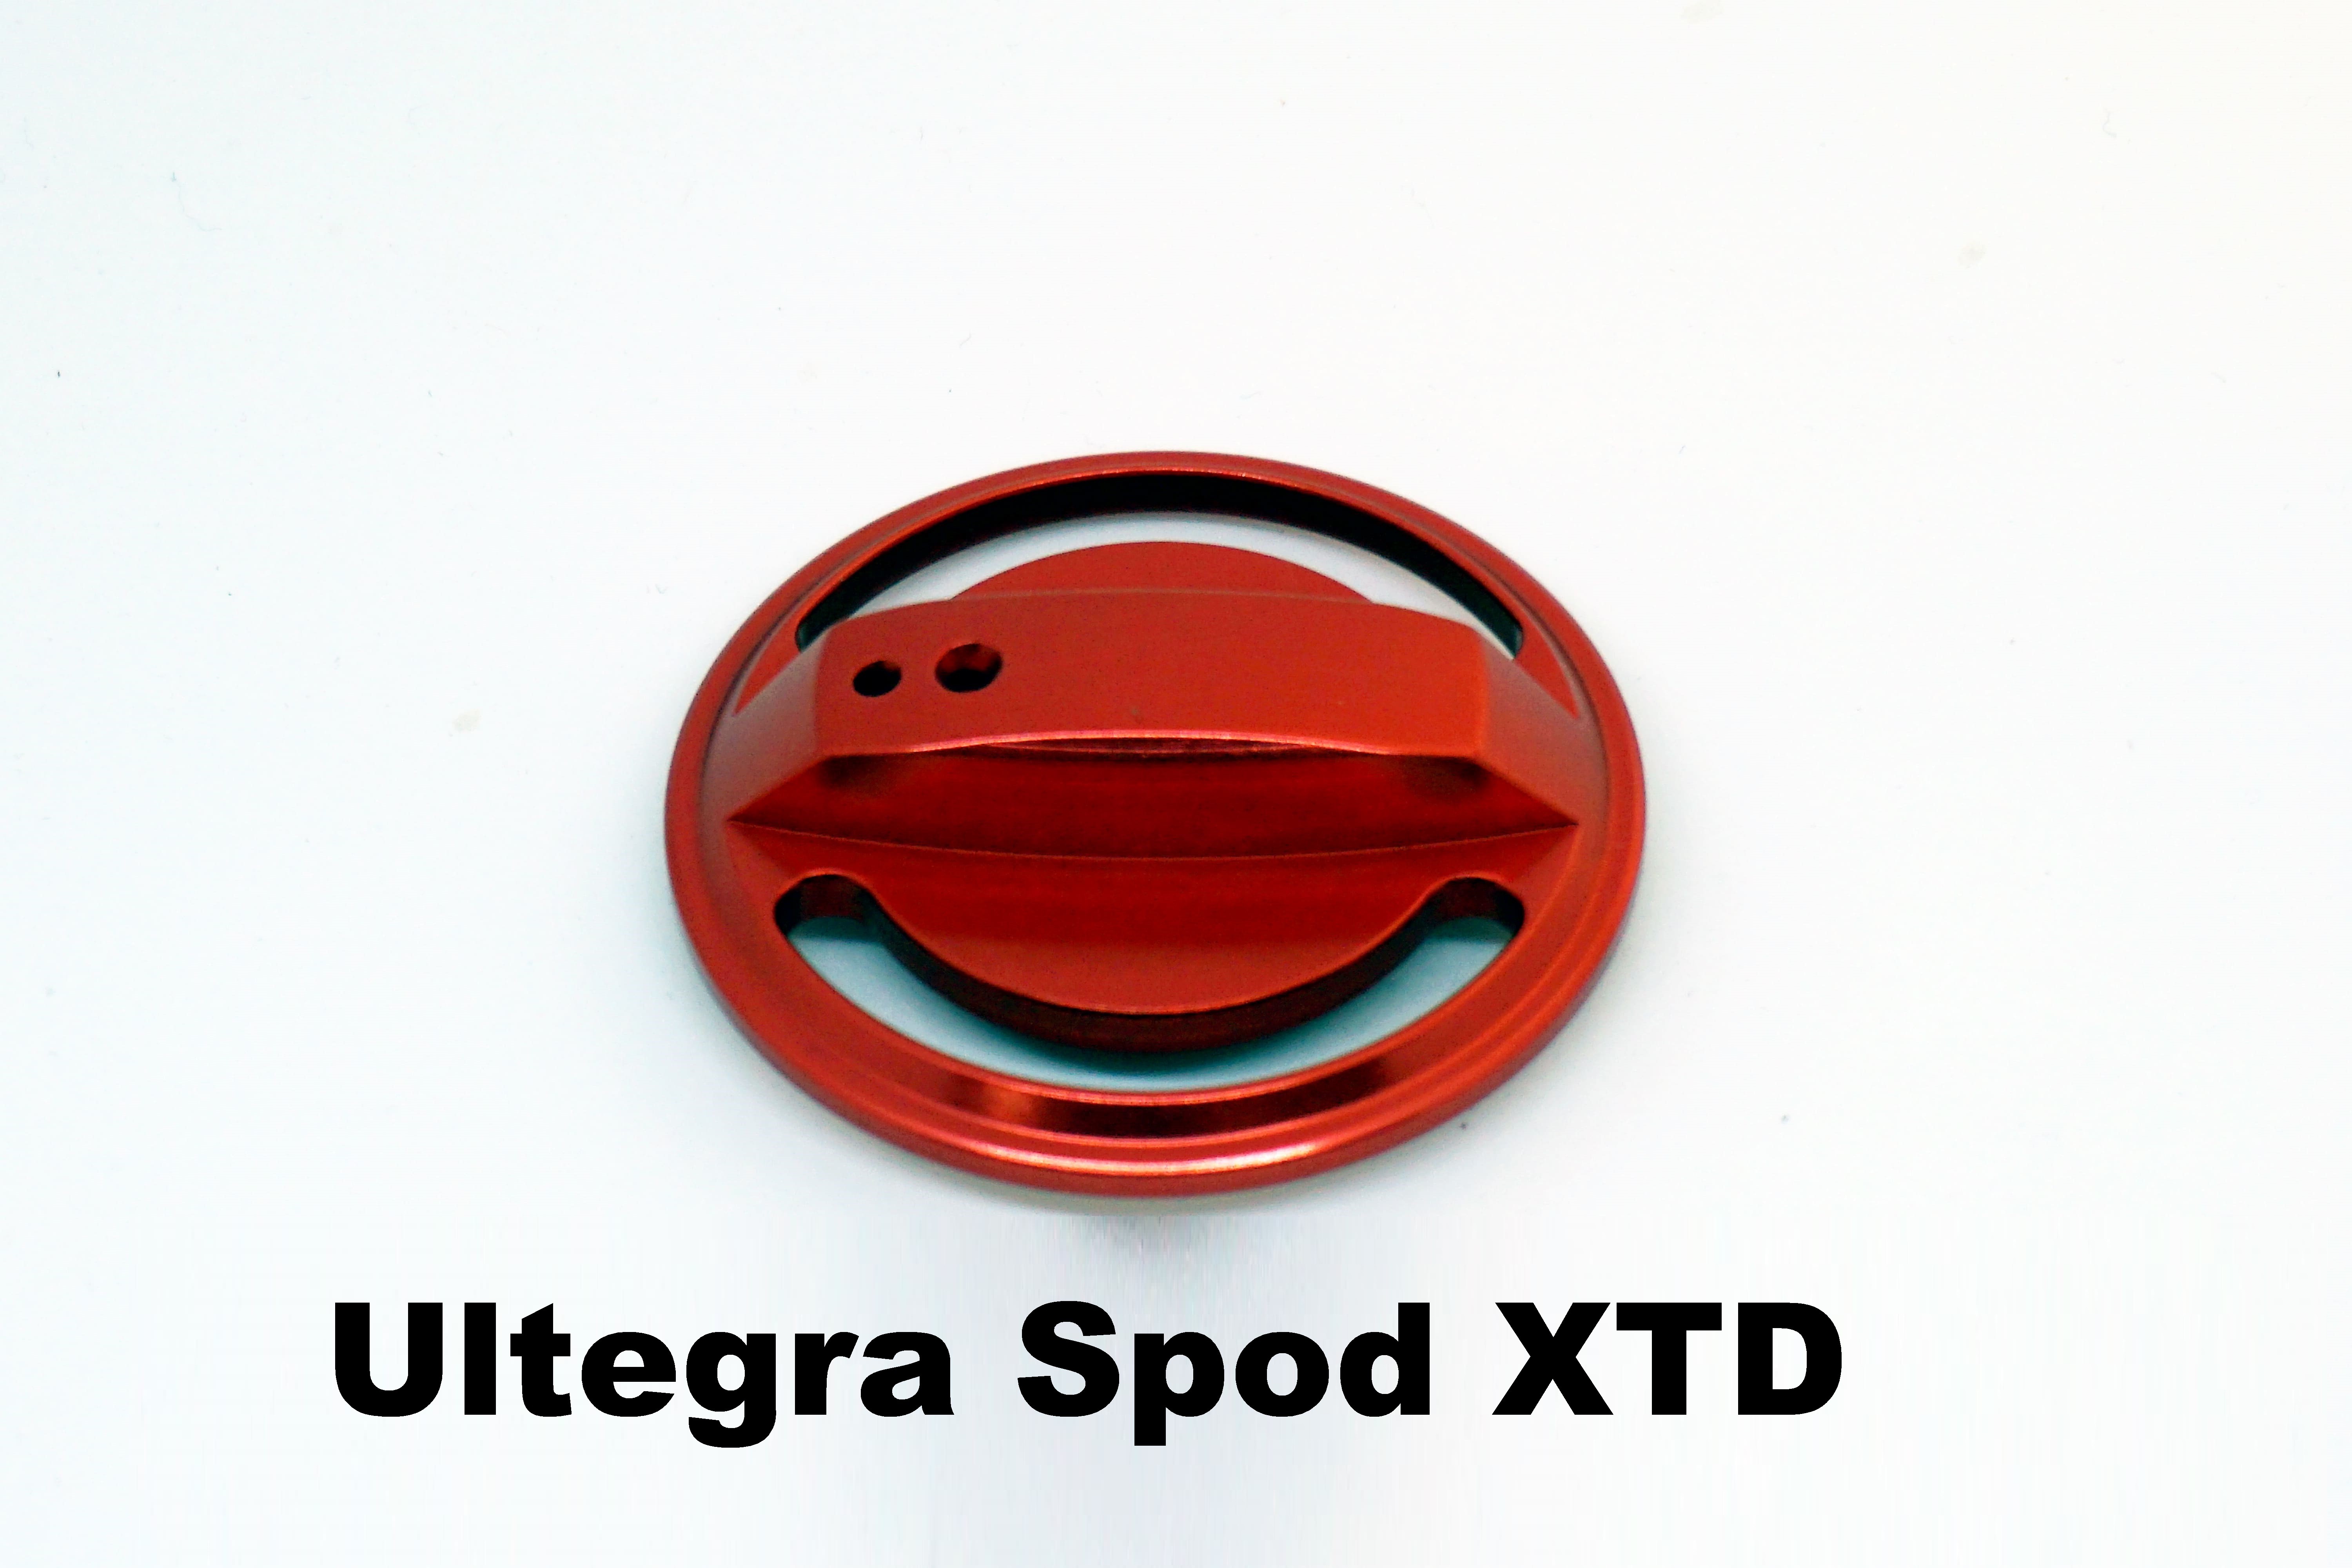 Drag Knob for Ultegra Spod XTD